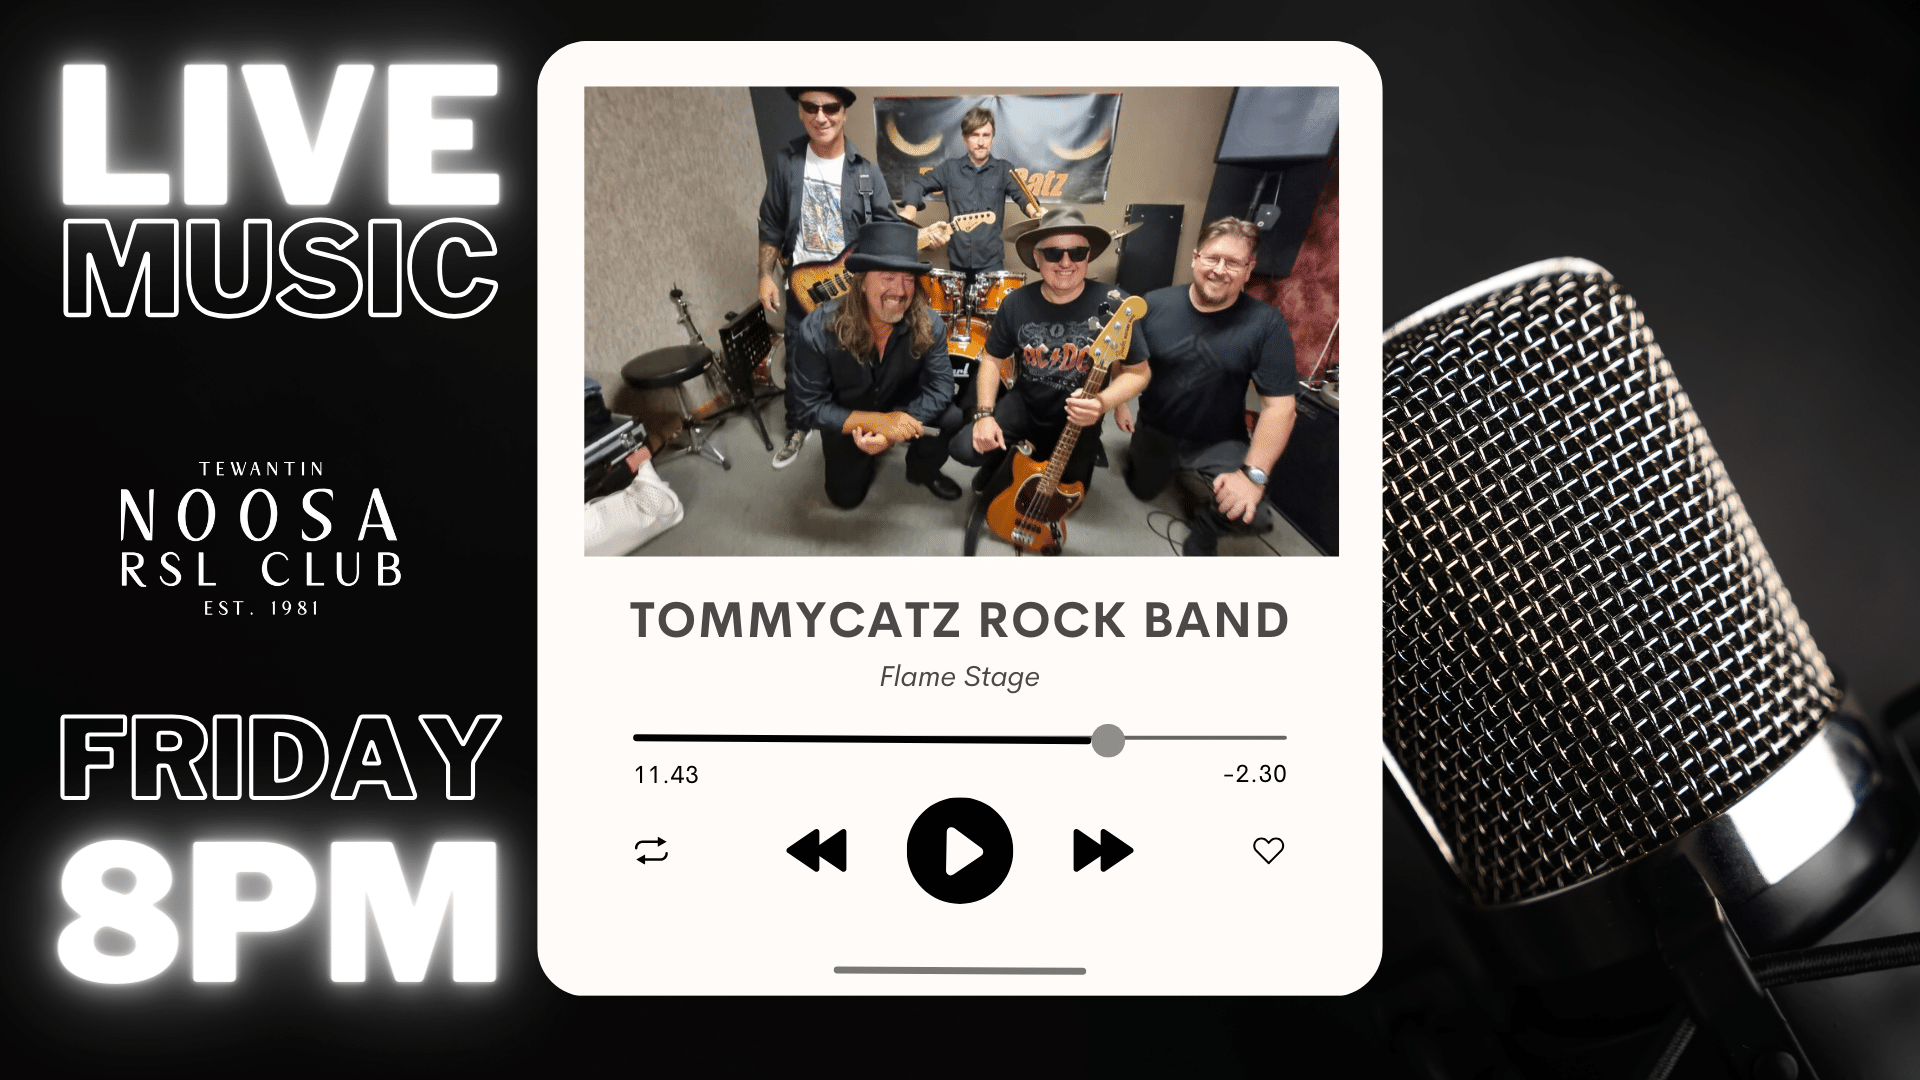 Tommycatz Rock Band